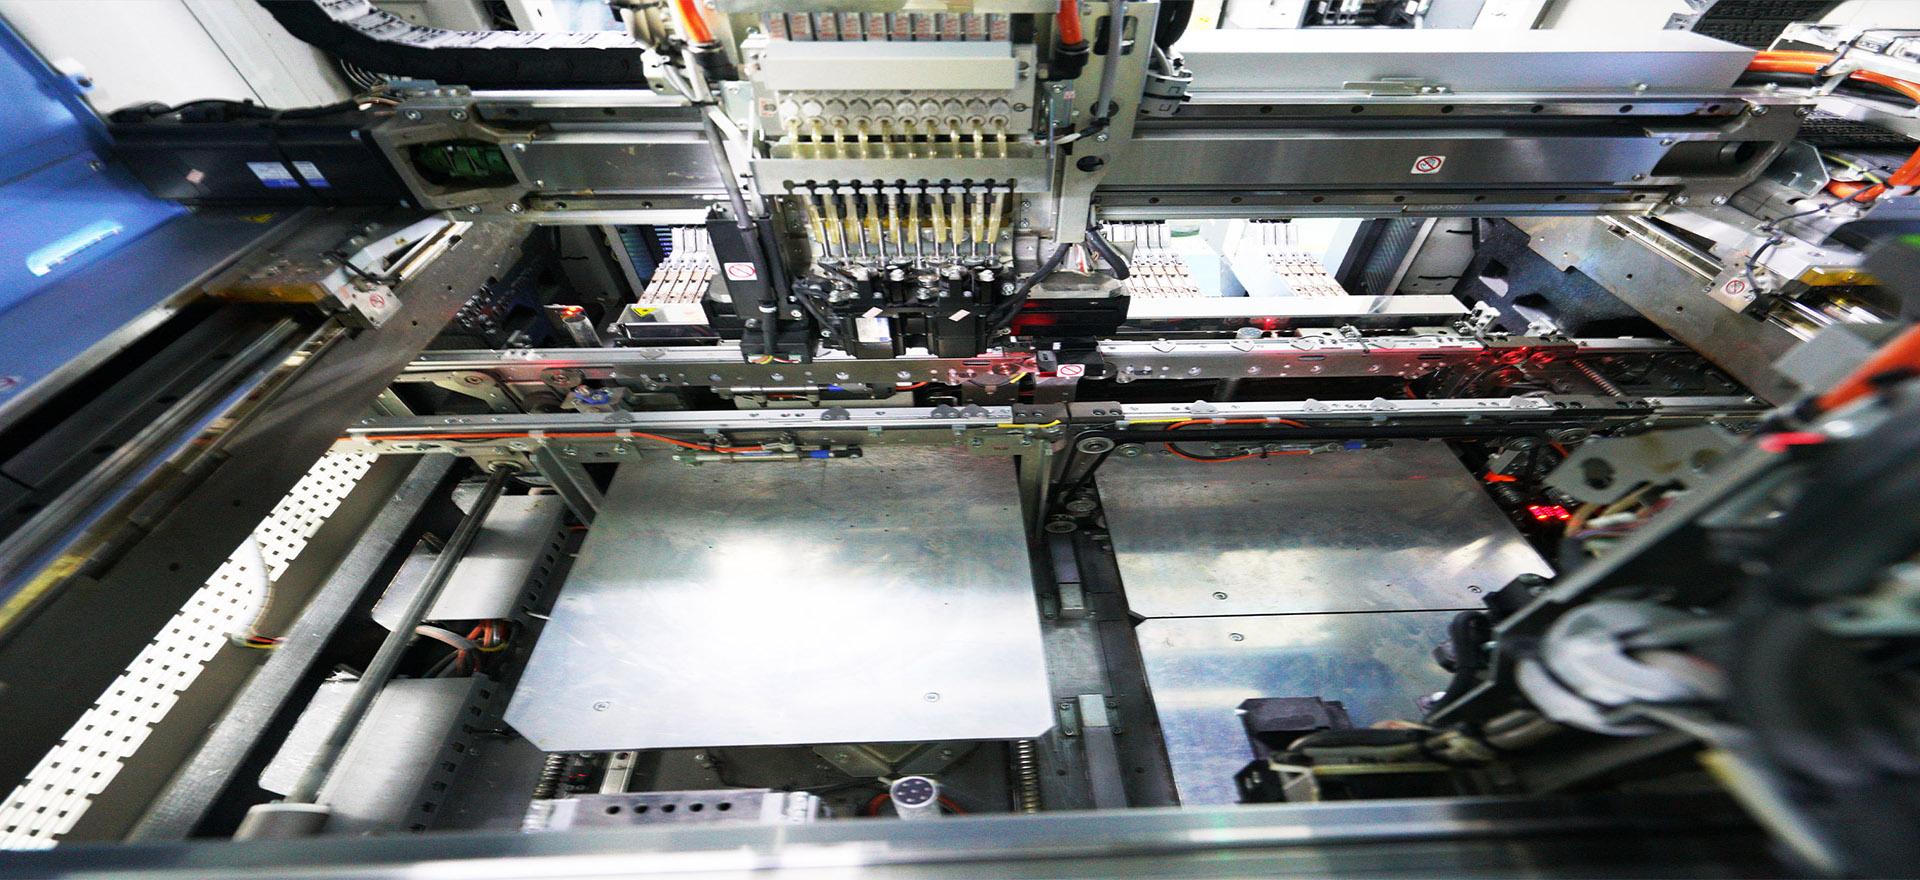 pcba factory YS24 SMT placement machine